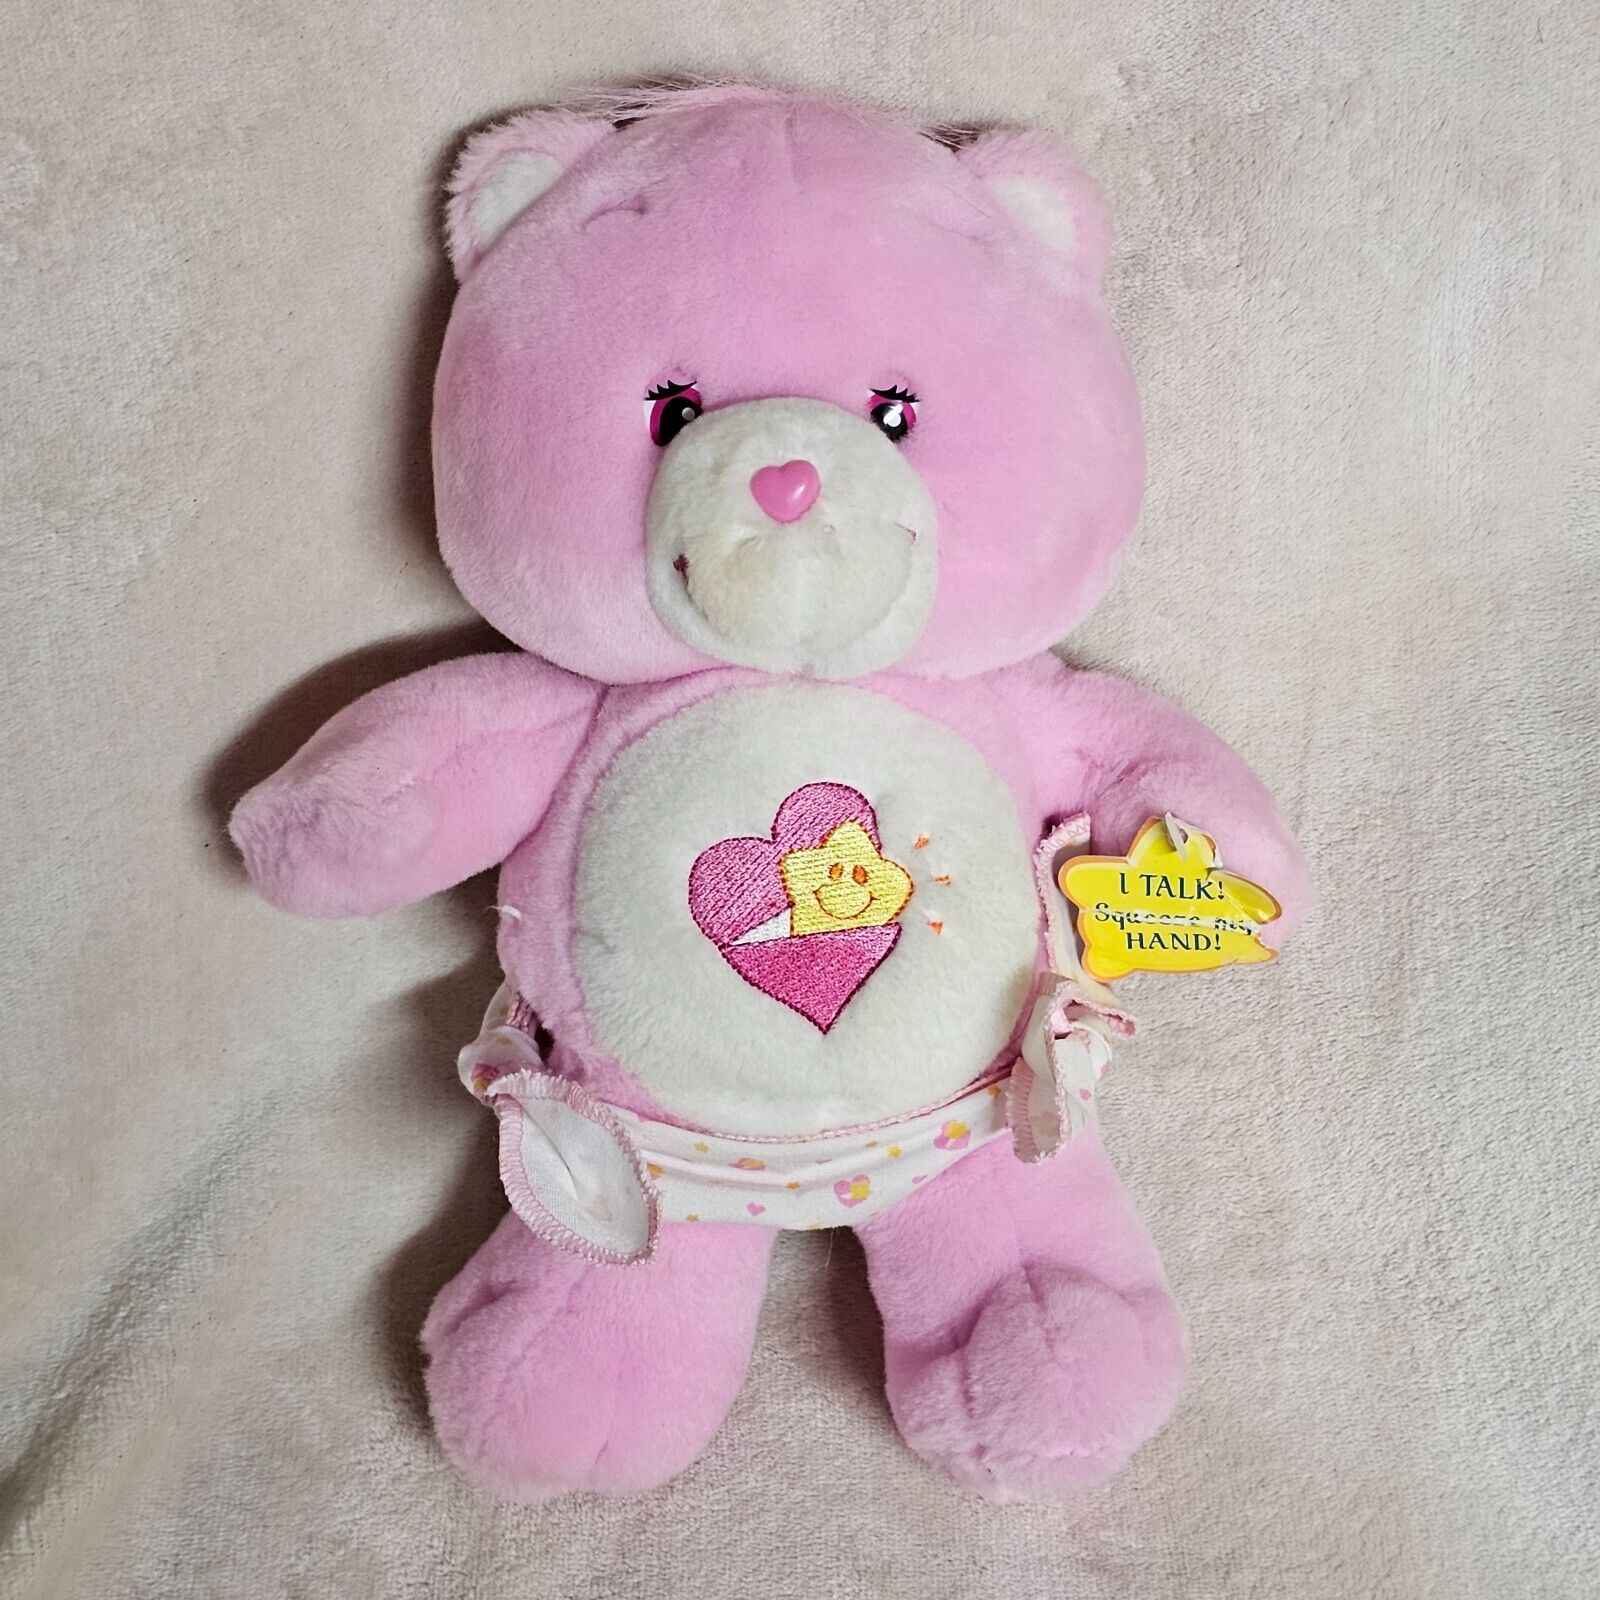 Care Bears 10" Talking Baby Hugs Bear Heart Star in Diaper 2003 - $24.74